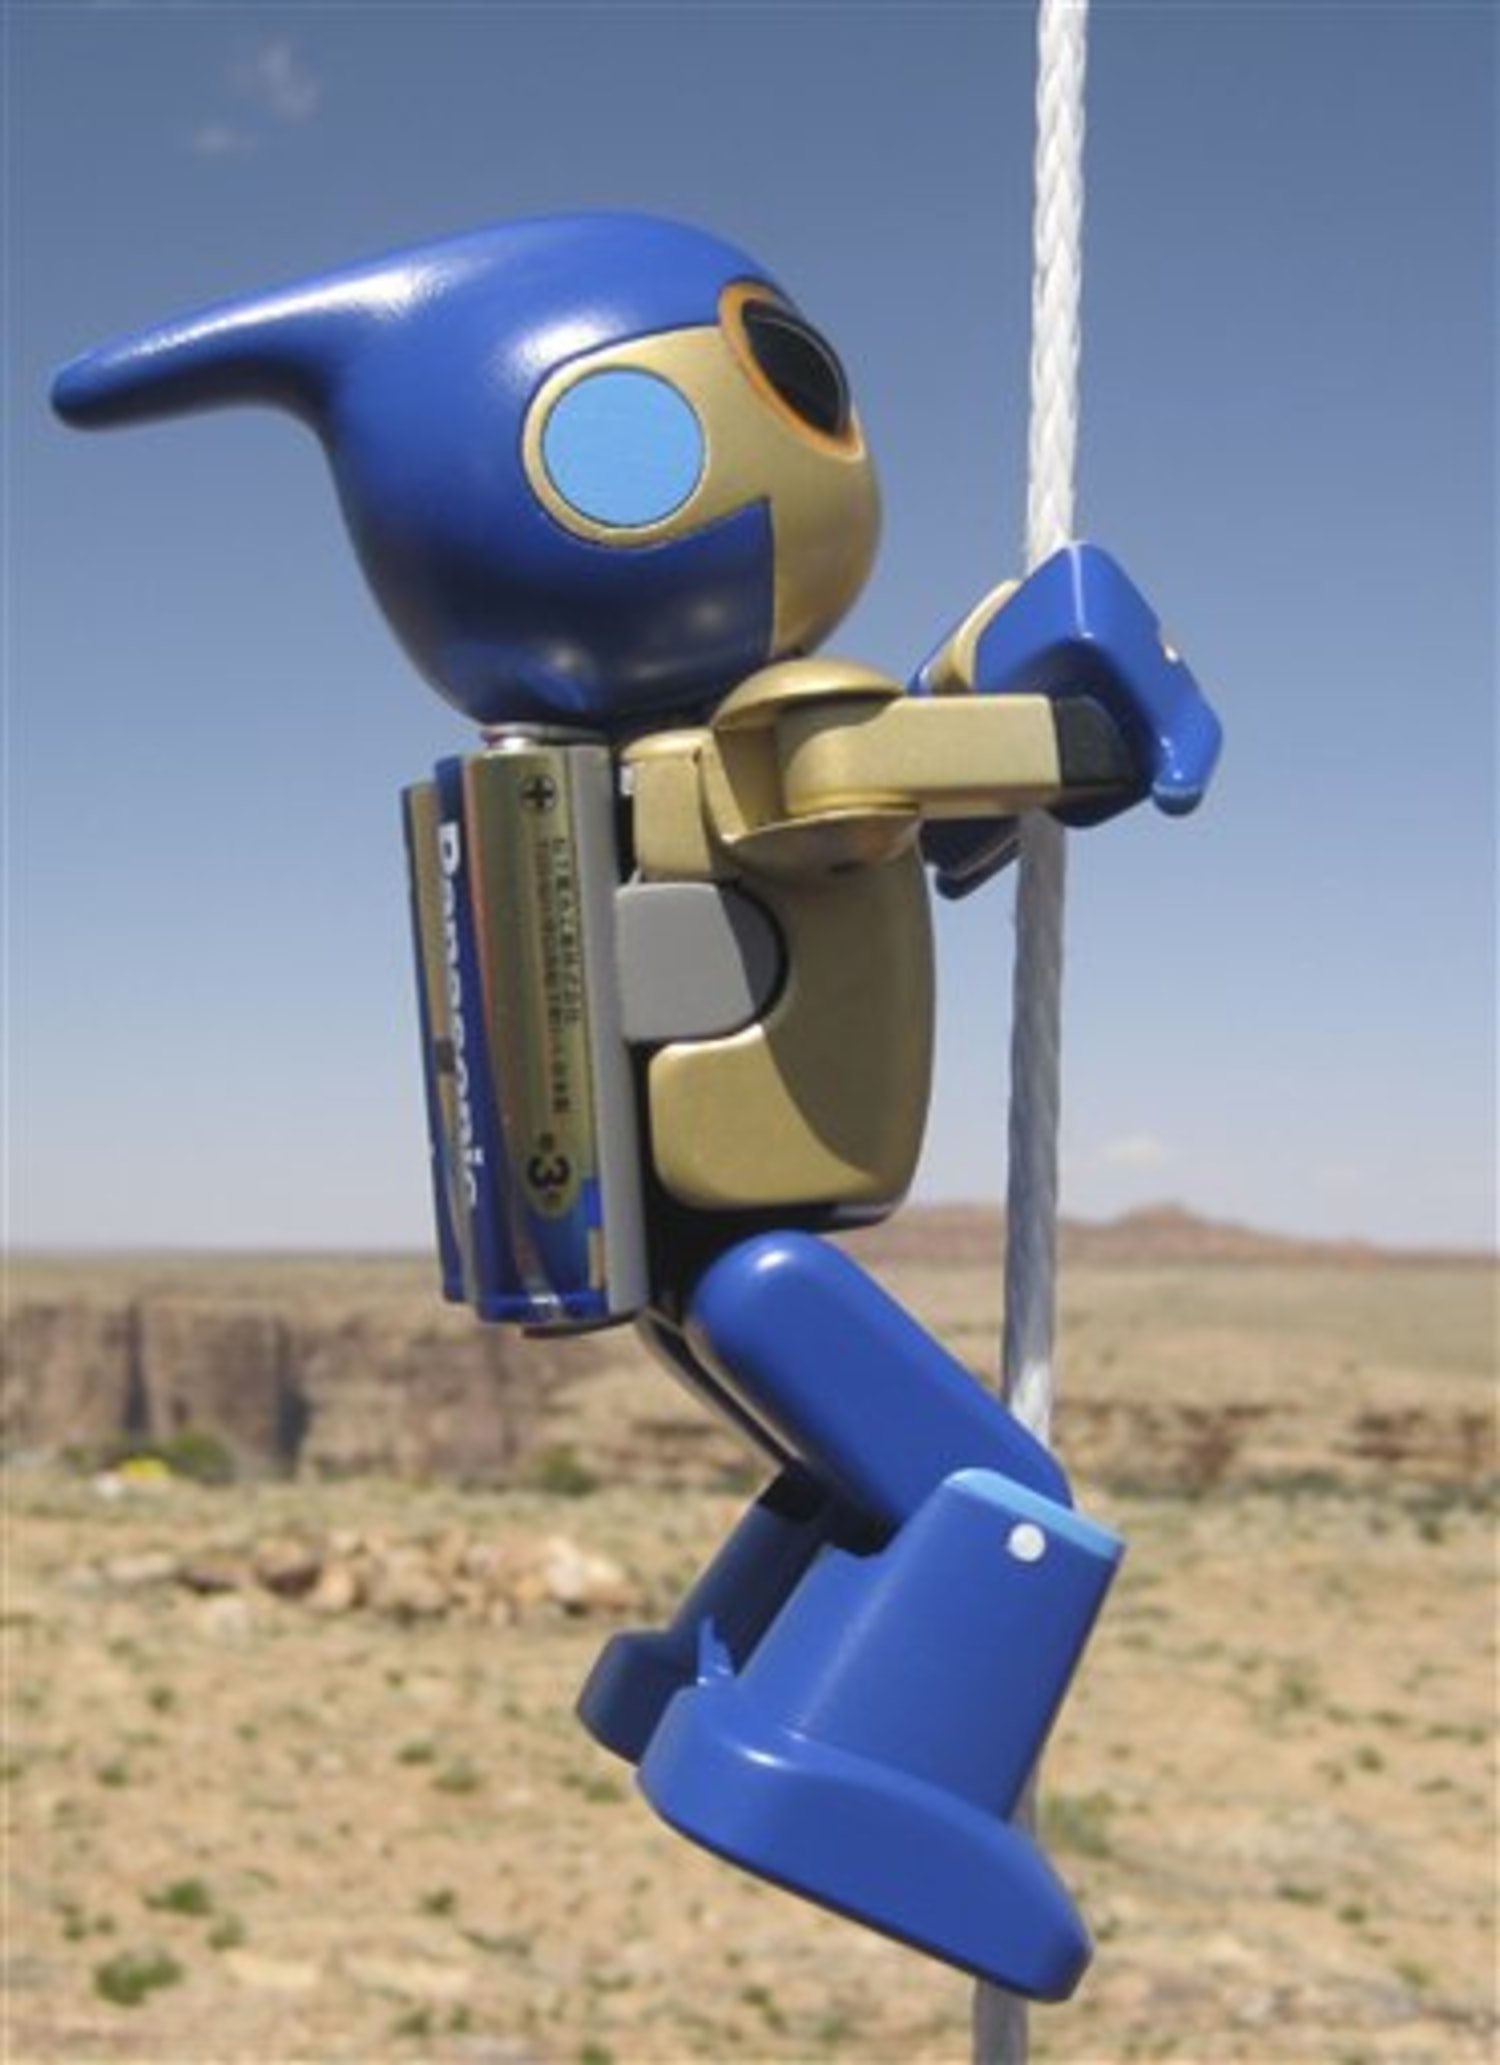 Robot climbs on batteries